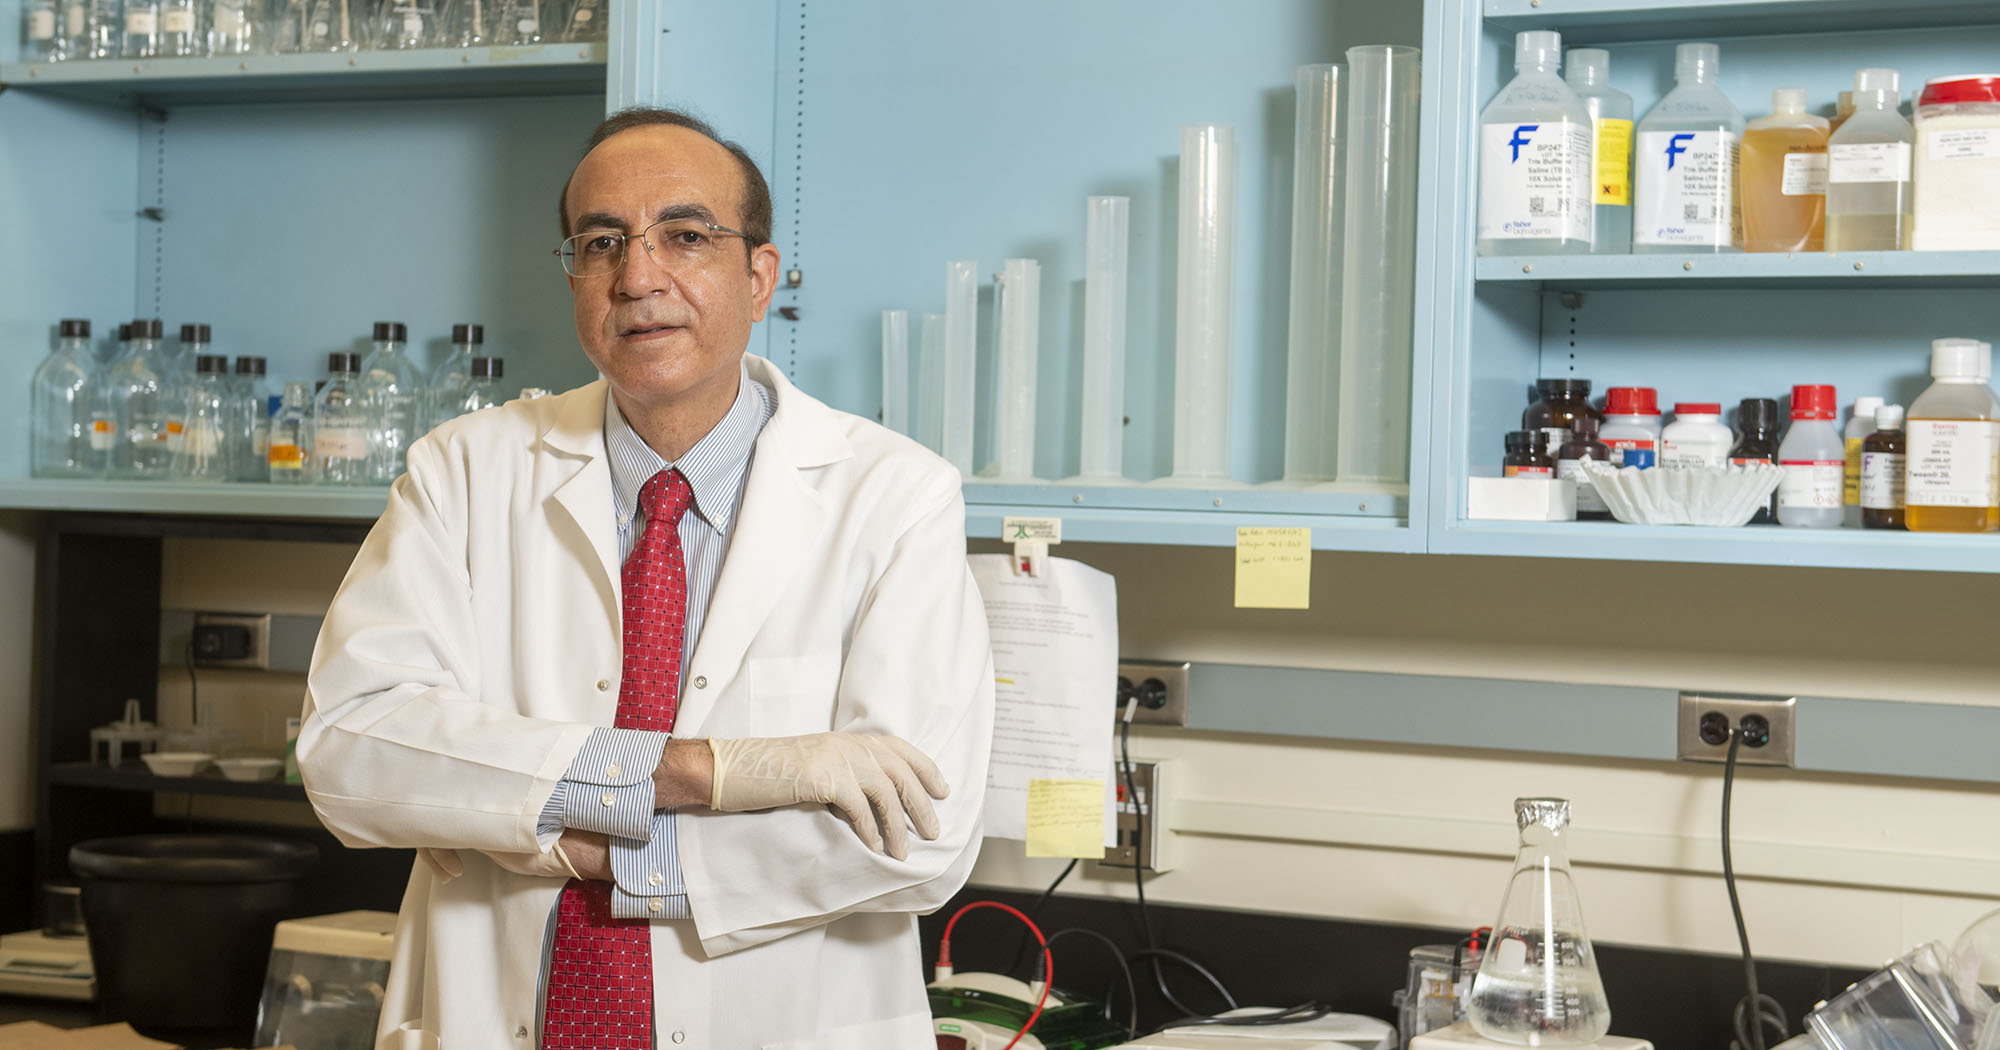 Dr. Mohamed Elgazzar